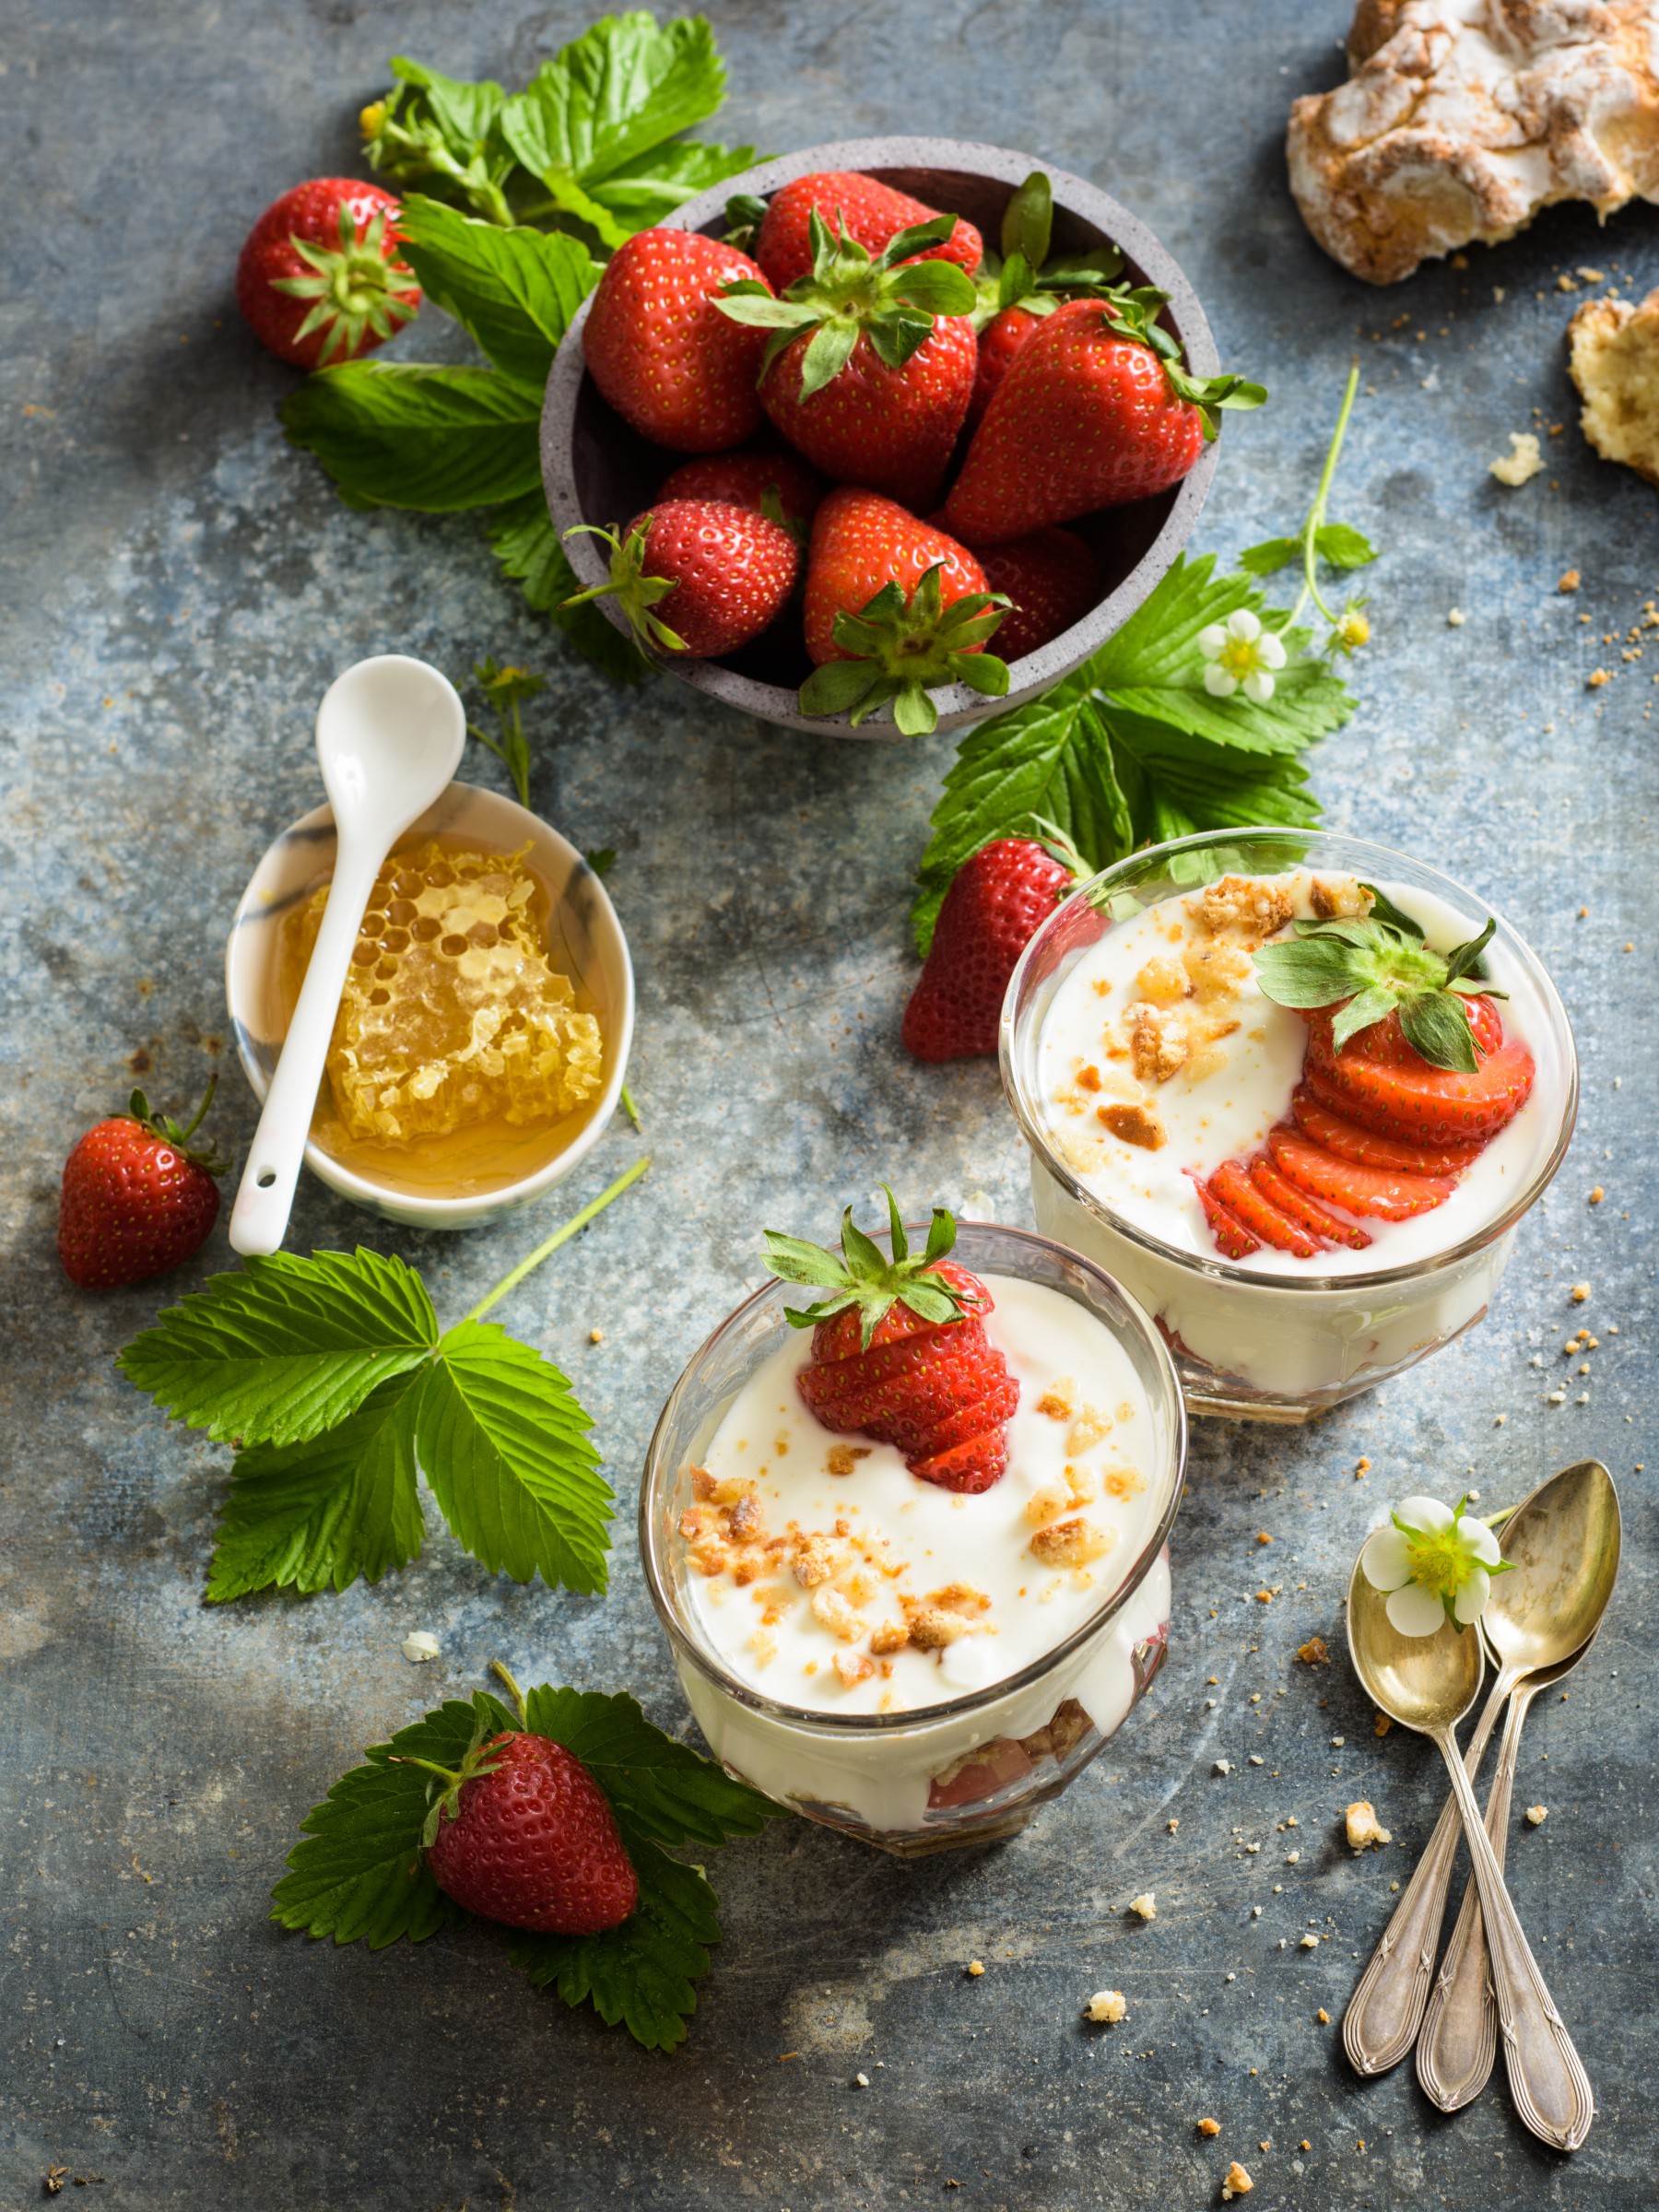 Mascarpone Joghurt Creme mit Erdbeeren | Studio KiBa foodphotography